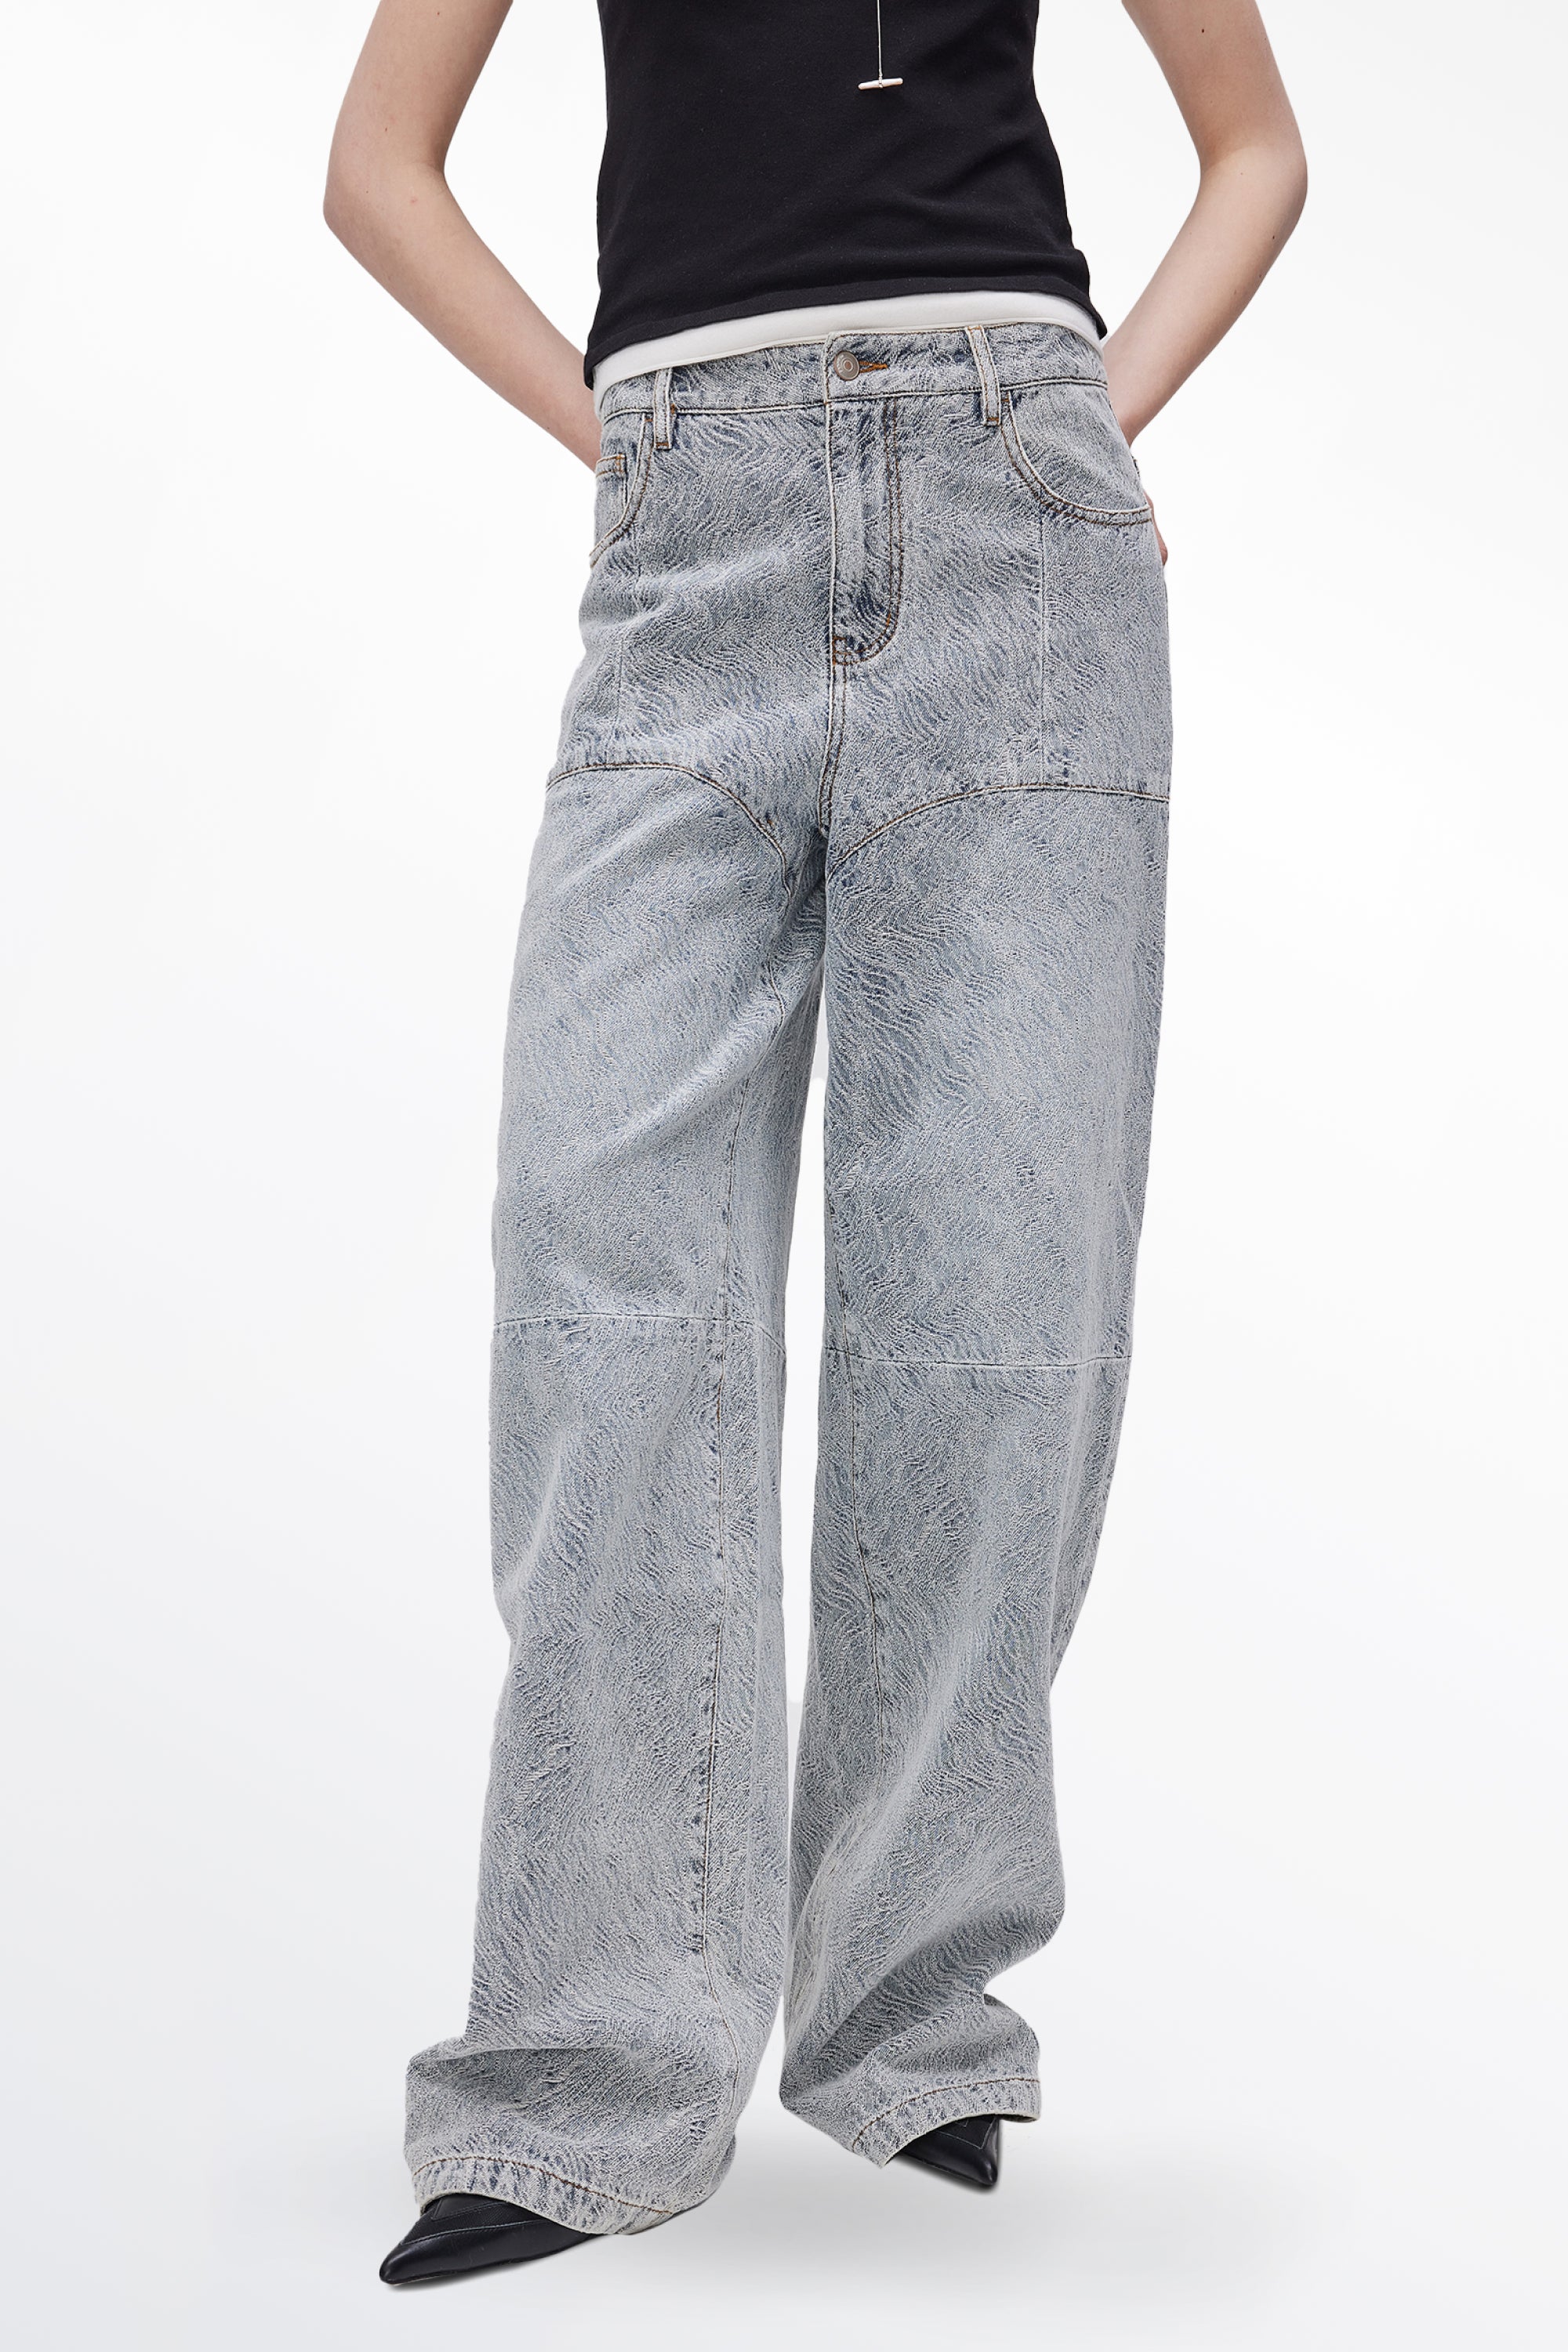 Eliana Textured Patchwork Jeans in Cotton Denim